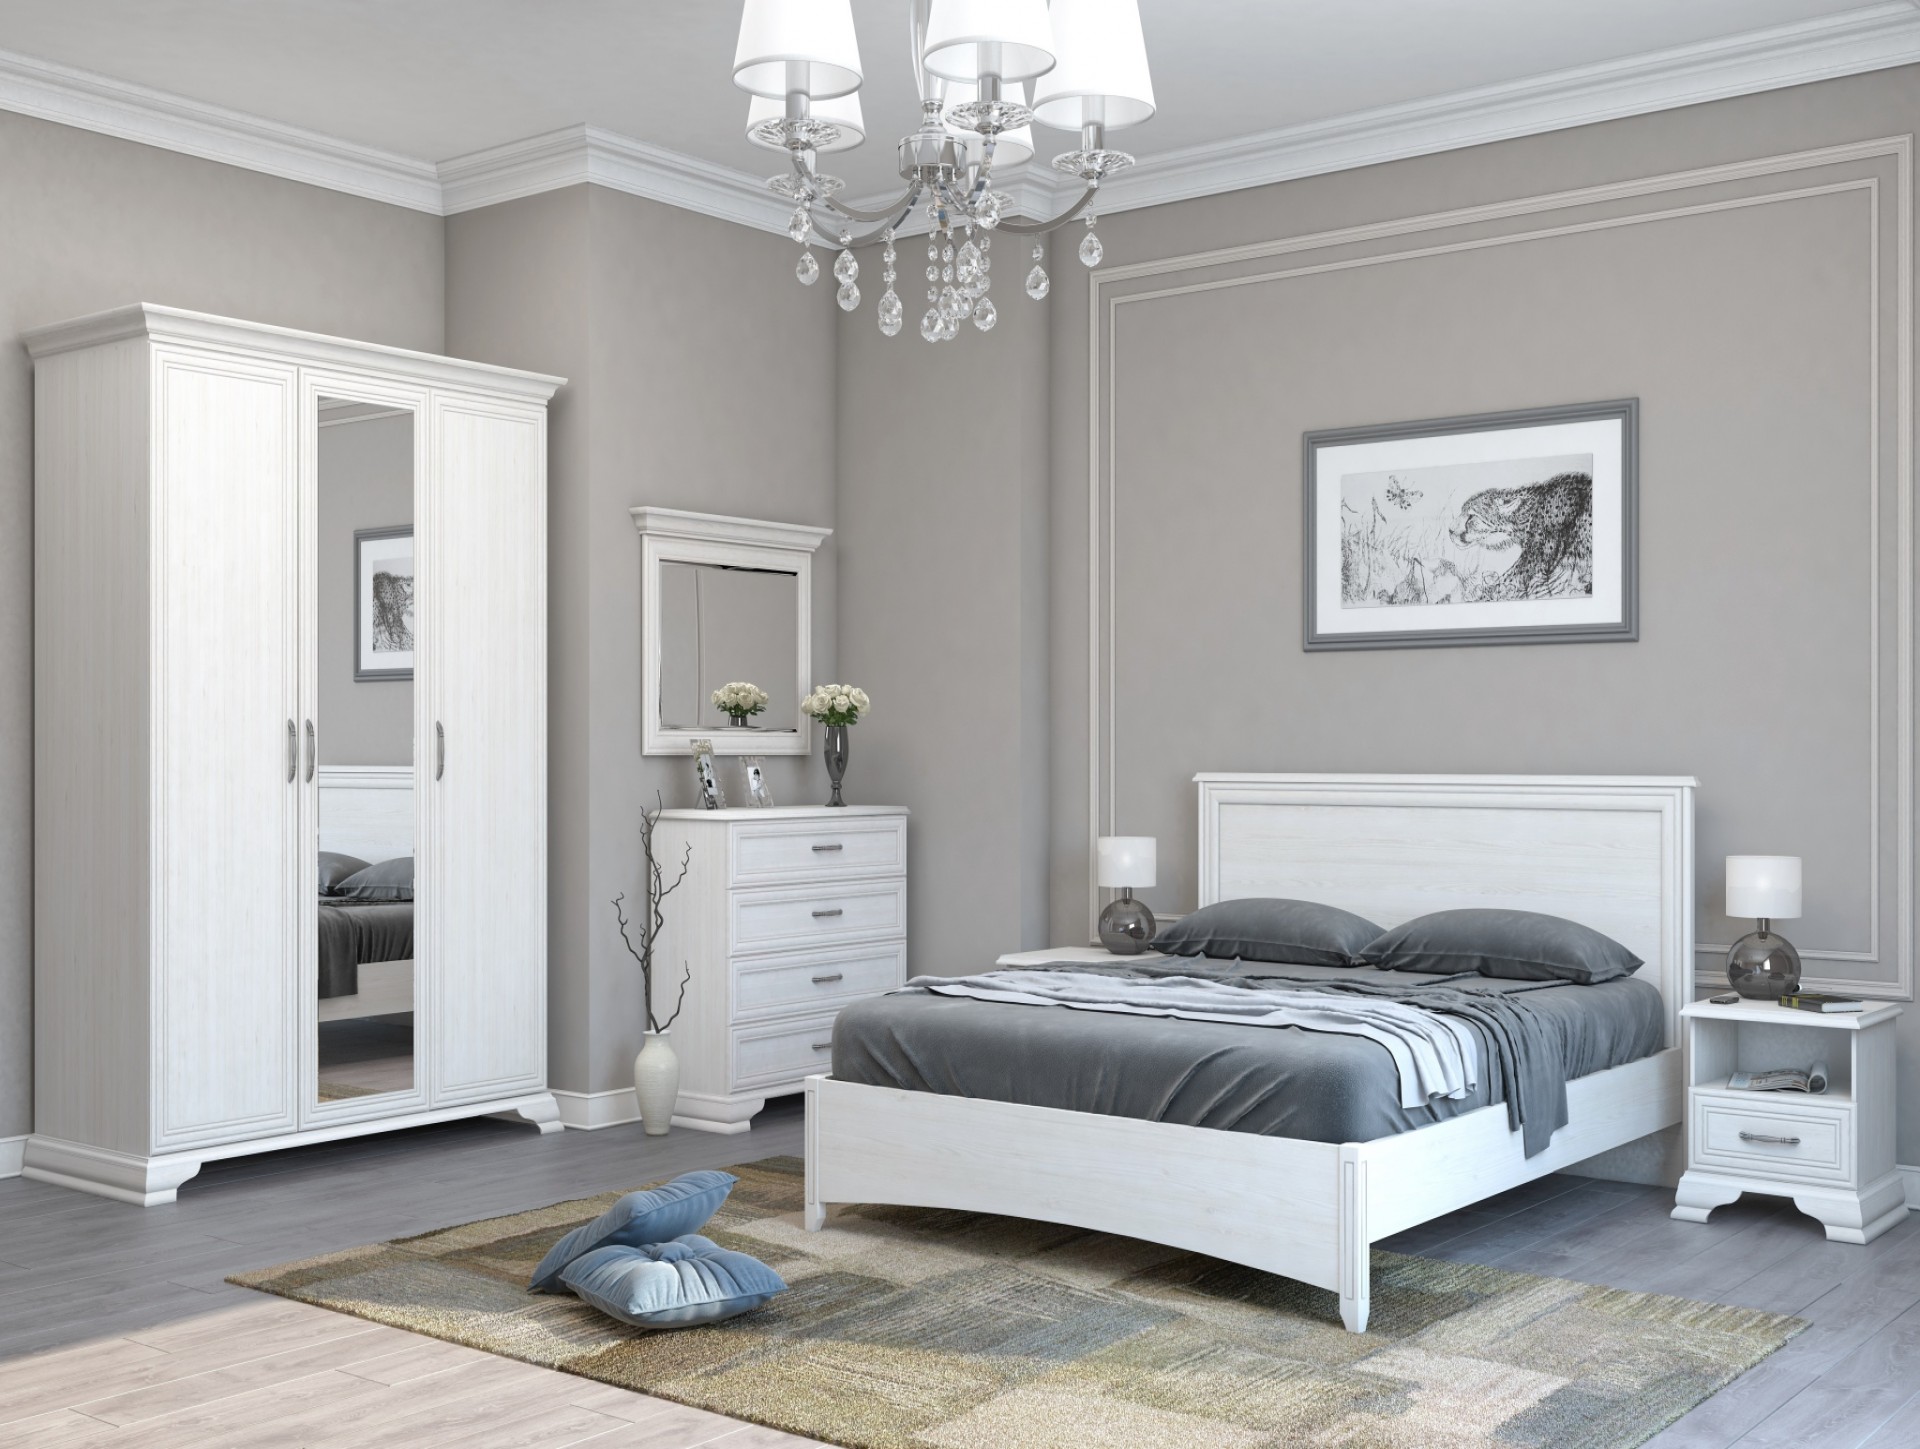 Спальня белая мебель фото